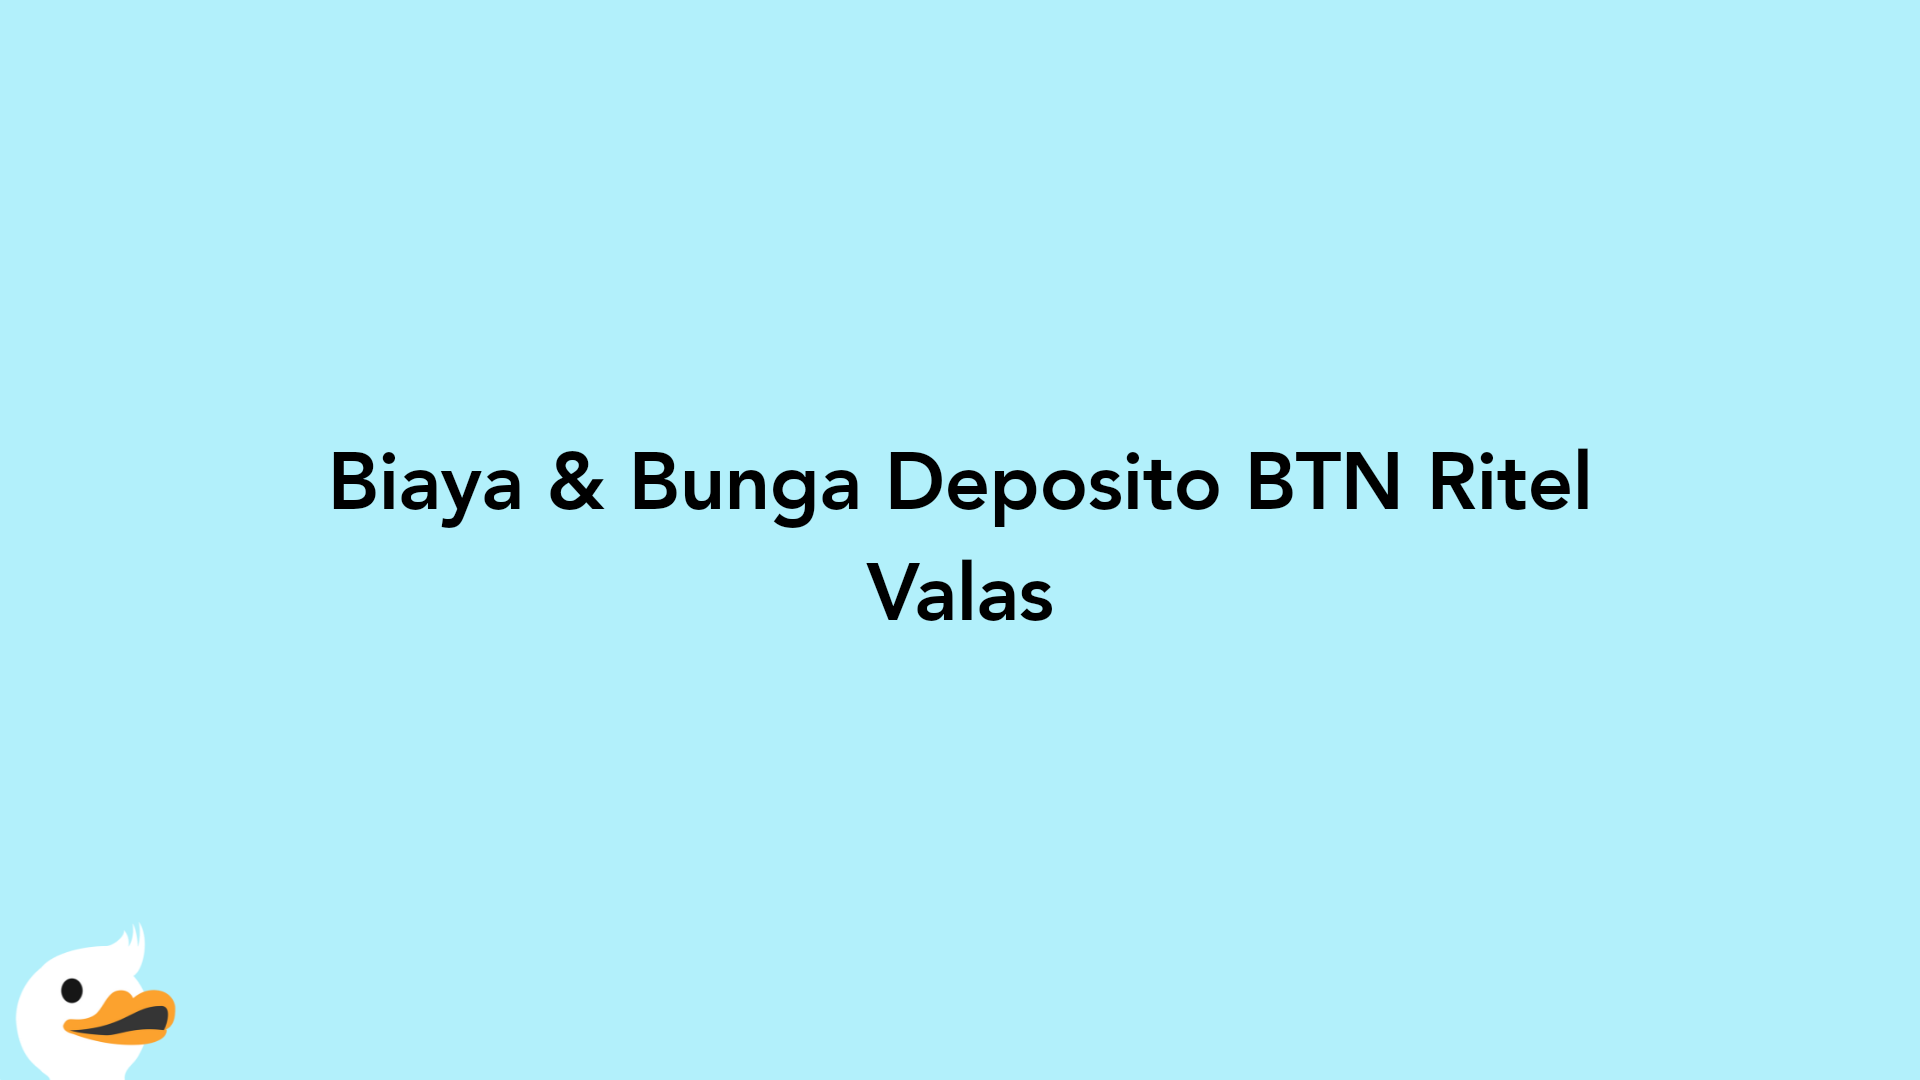 Biaya & Bunga Deposito BTN Ritel Valas